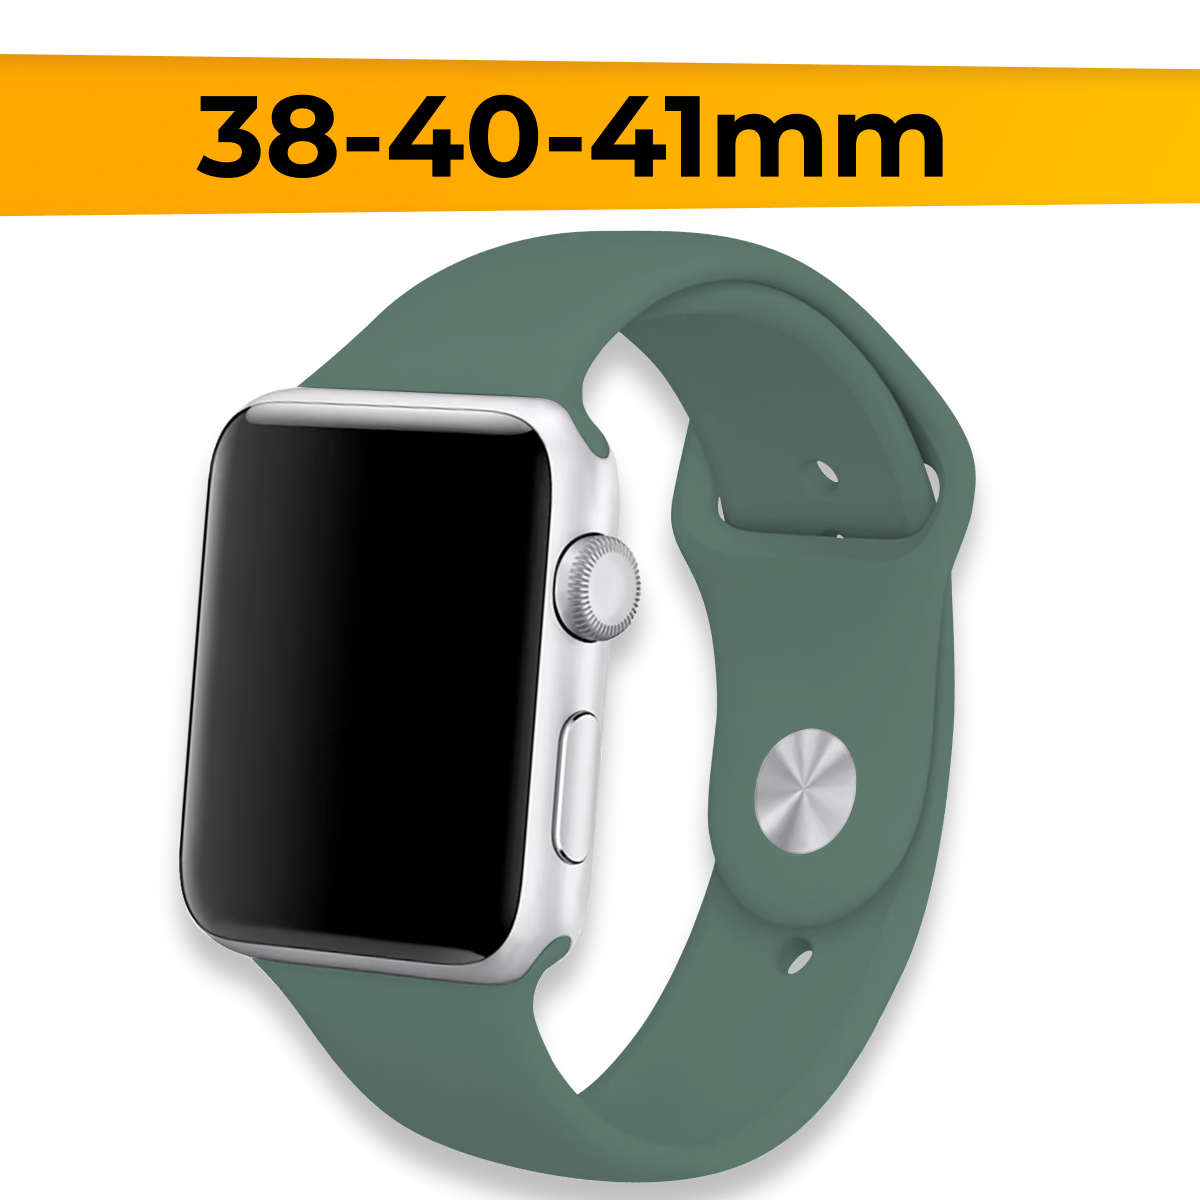 Силиконовый ремешок для Apple Watch 38-40-41mm / Спортивный сменный браслет для умных смарт часов Эппл Вотч 1-9 Series и SE / Dark Olive